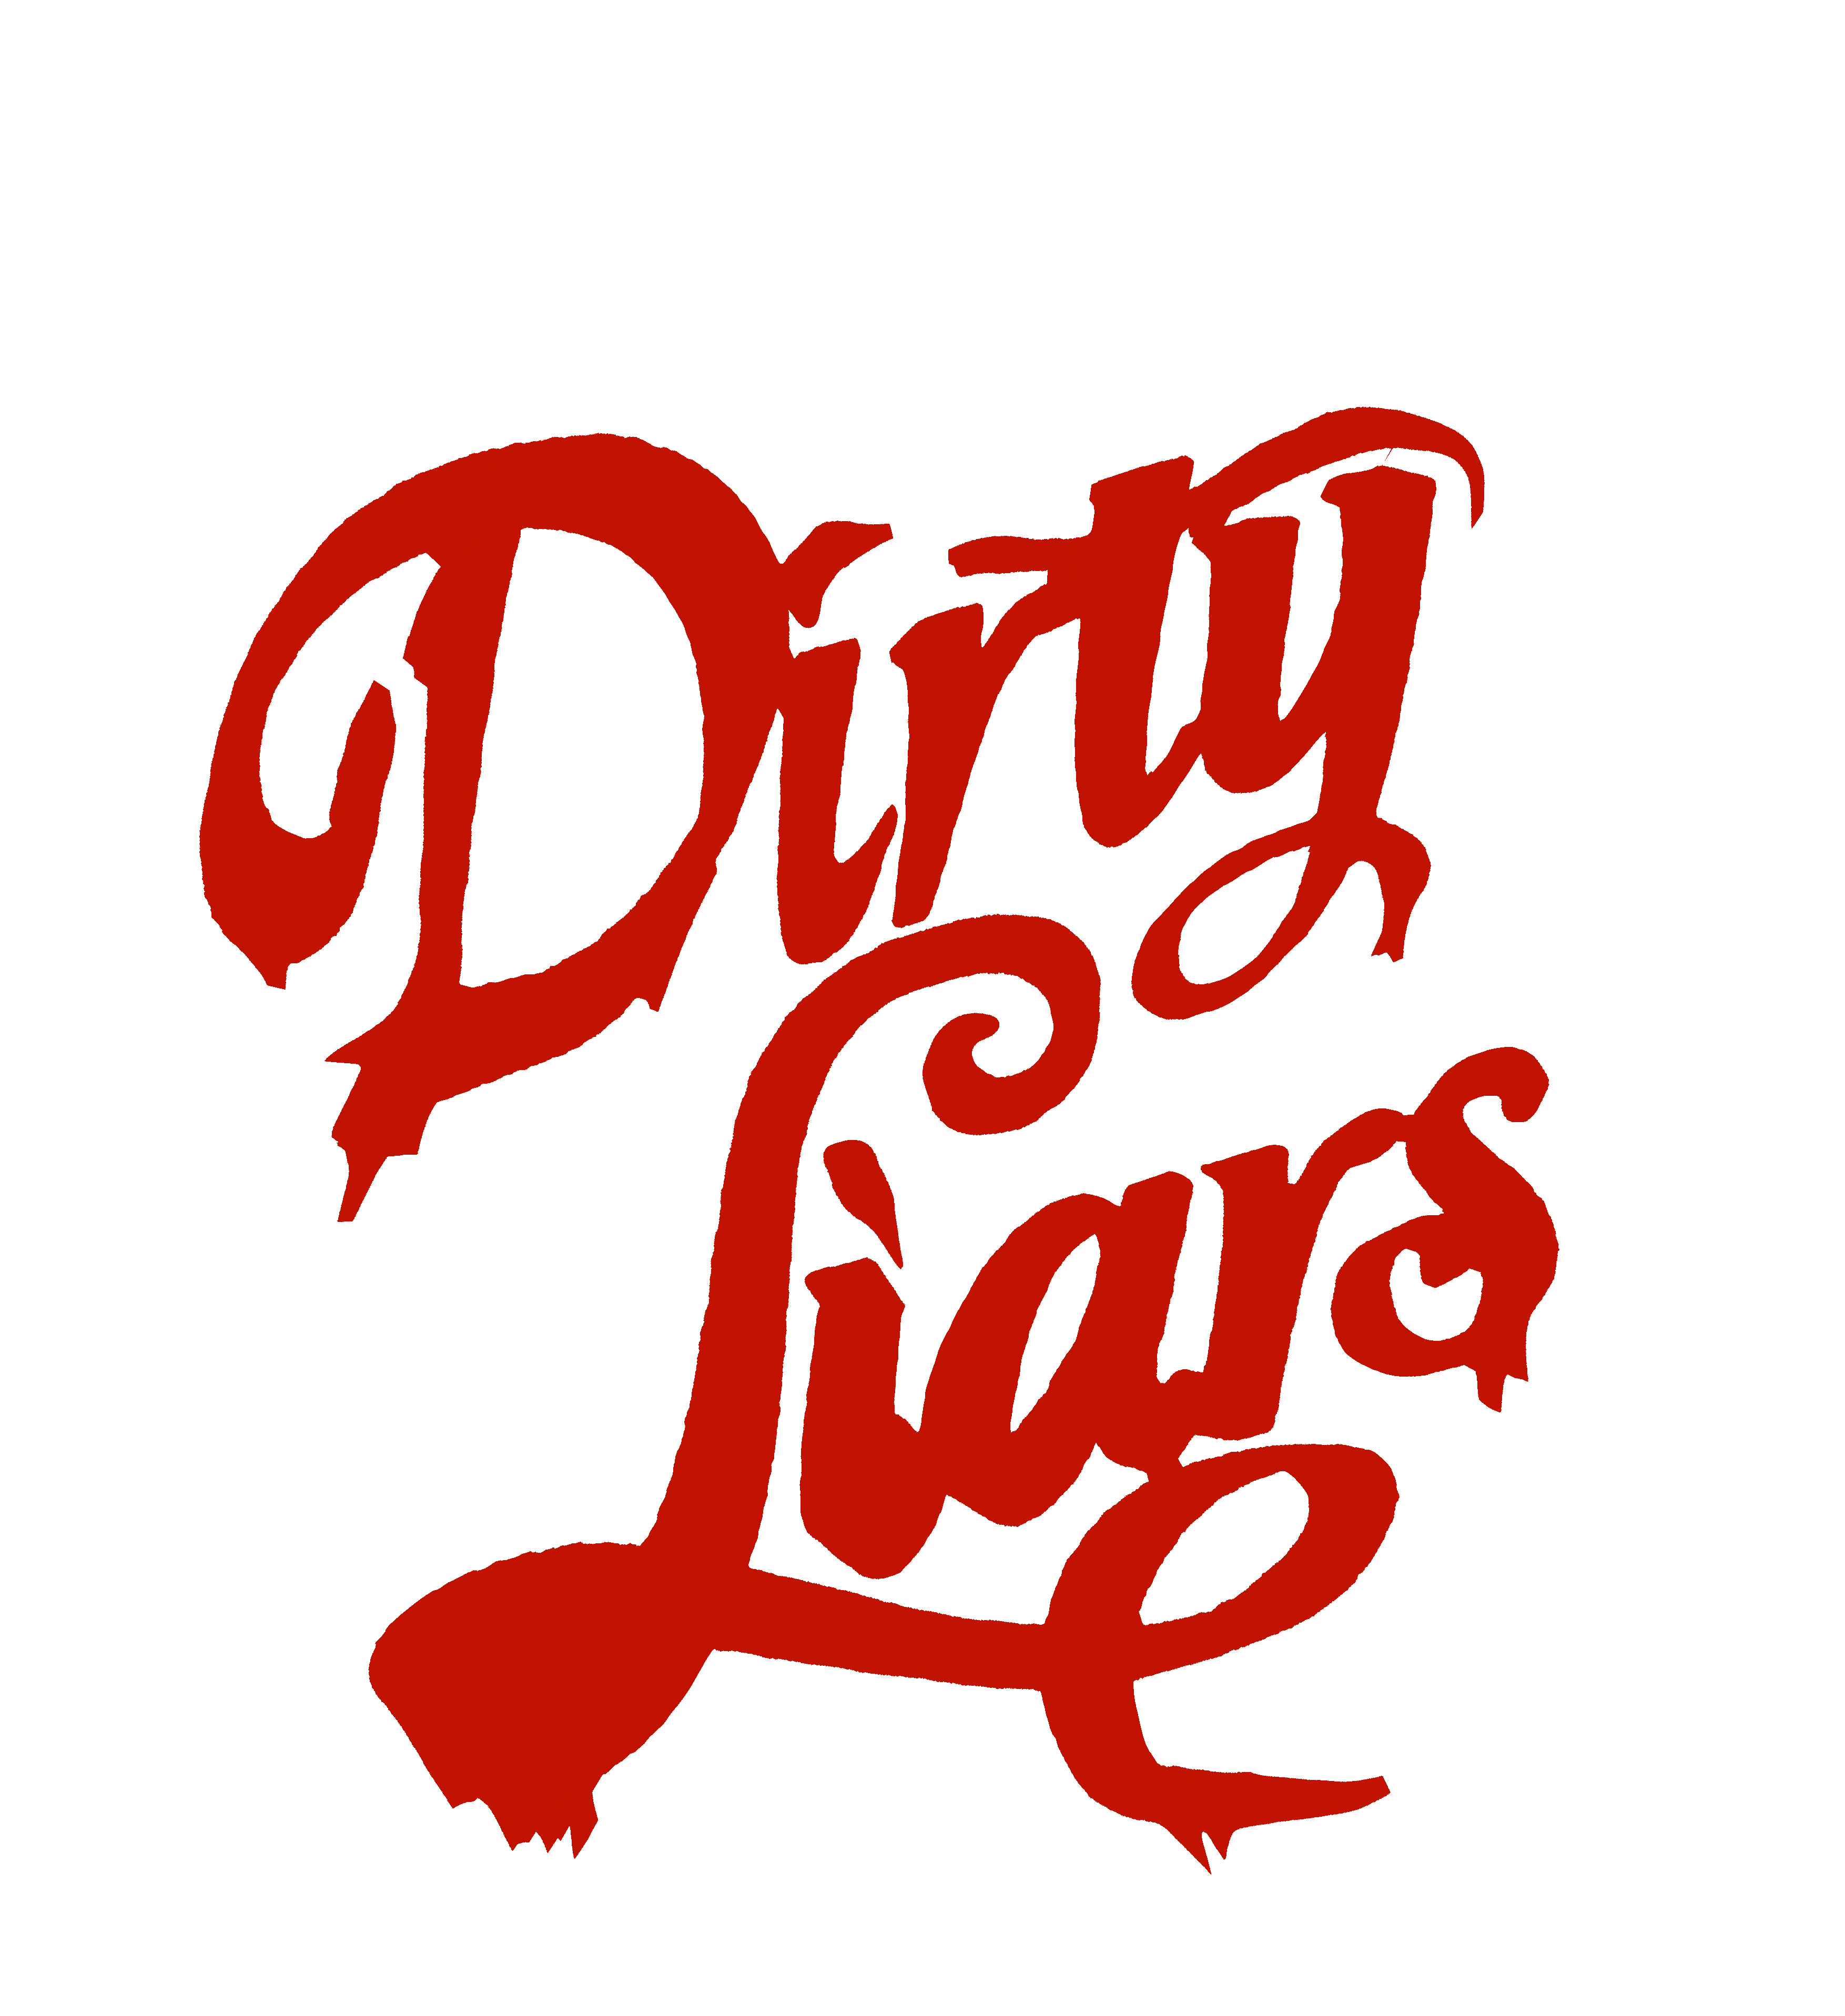 Dirty Liars